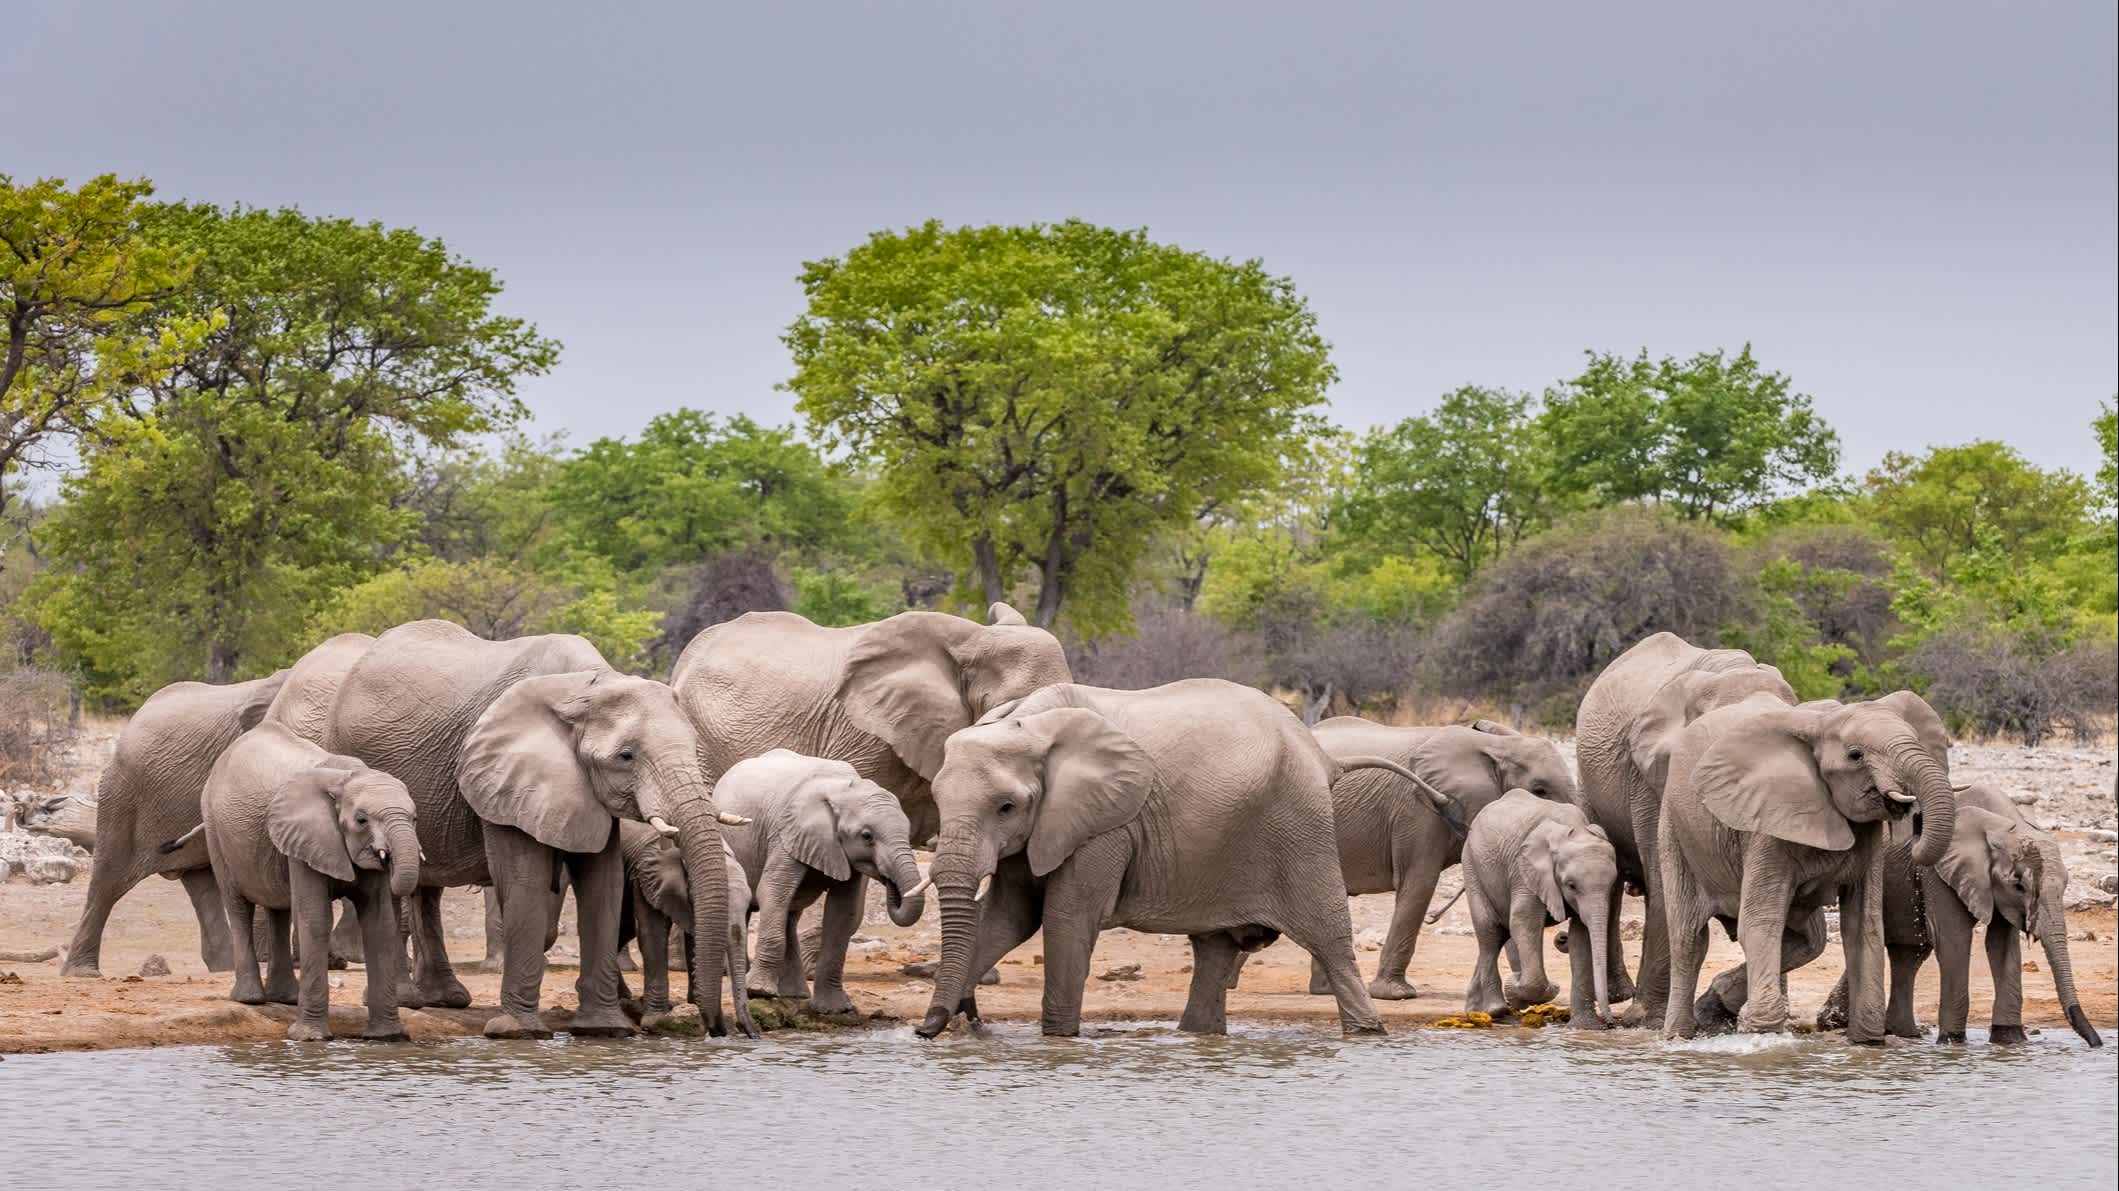 Petit troupeau d'éléphants s'abreuvant à un point d'eau à Etosha, Namibie

